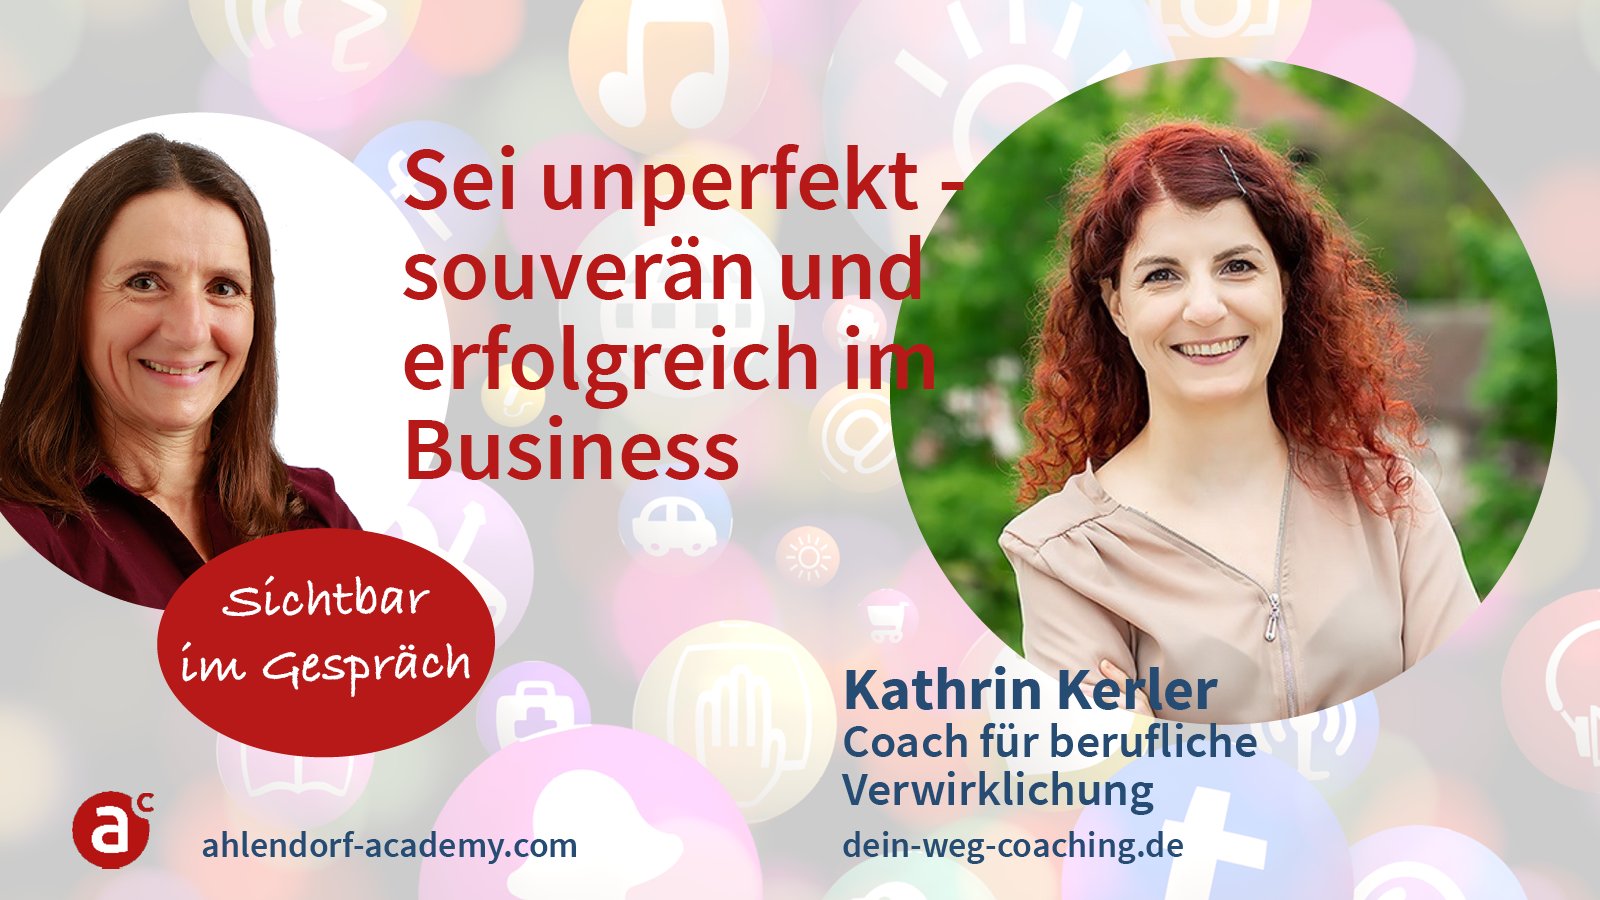 Sichtbar im Gespräch mit Kathrin Kerler: Sei unperfekt - souverän und erfolgreich im Business!